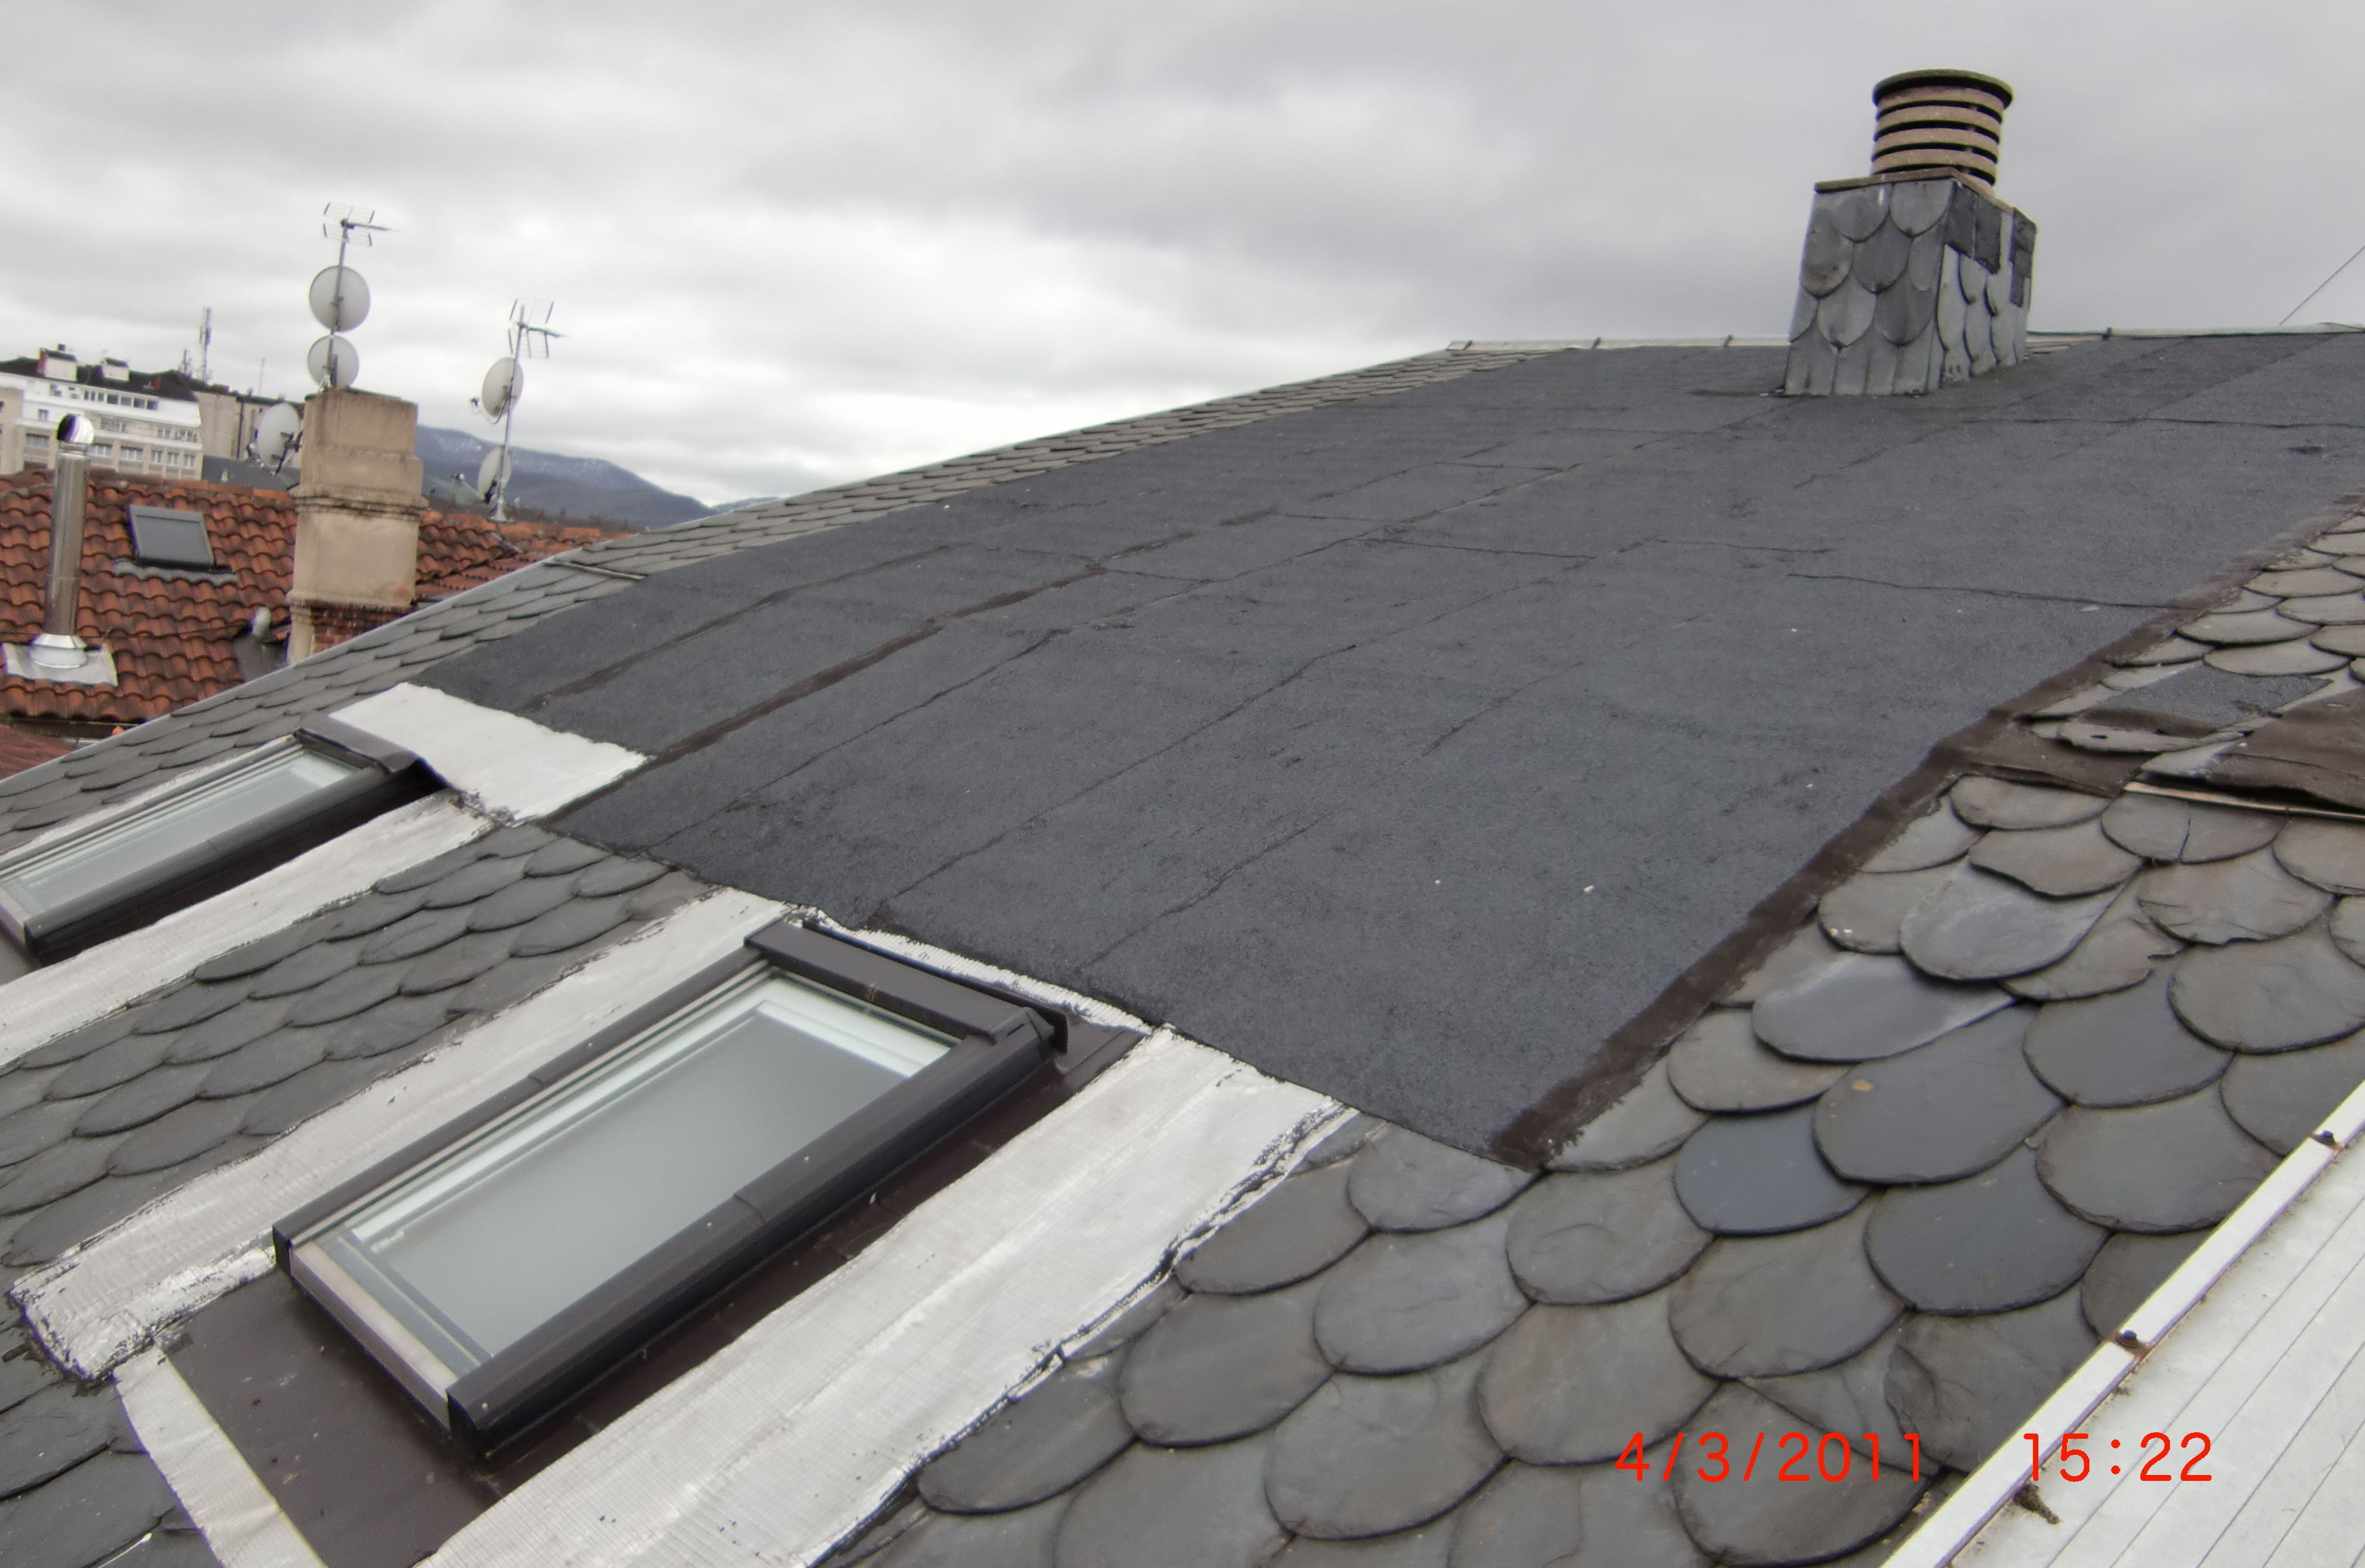 Rehabilitación de tejado en la calle Dato, 19 Vitoria-Gasteiz